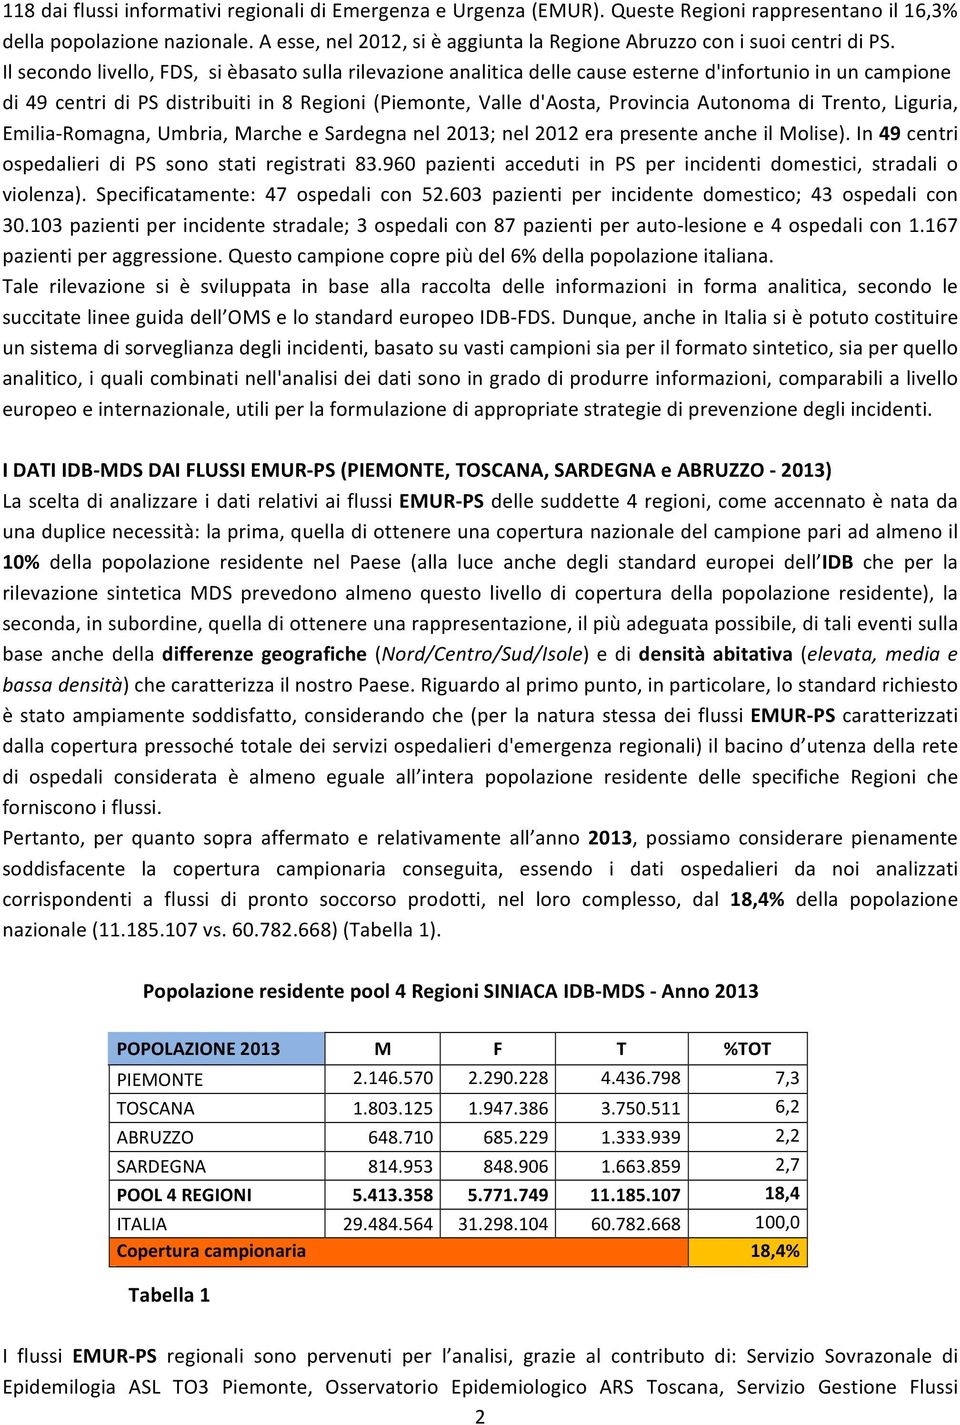 Il secondo livello, FDS, si èbasato sulla rilevazione analitica delle cause esterne d'infortunio in un campione di 49 centri di PS distribuiti in 8 Regioni (Piemonte, Valle d'aosta, Provincia